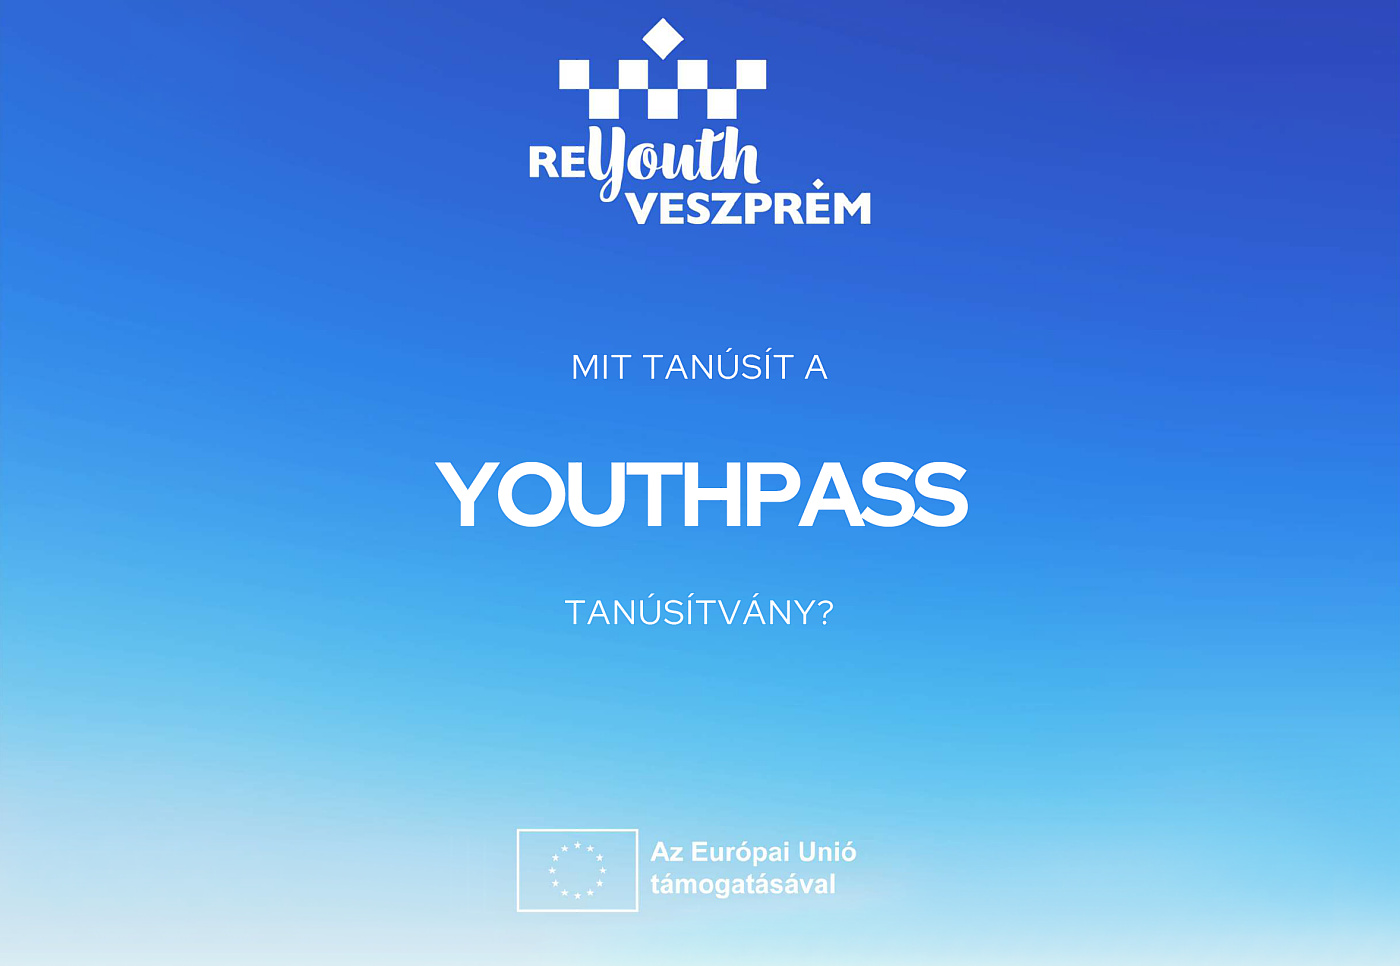 Youthpass Tanusitvany